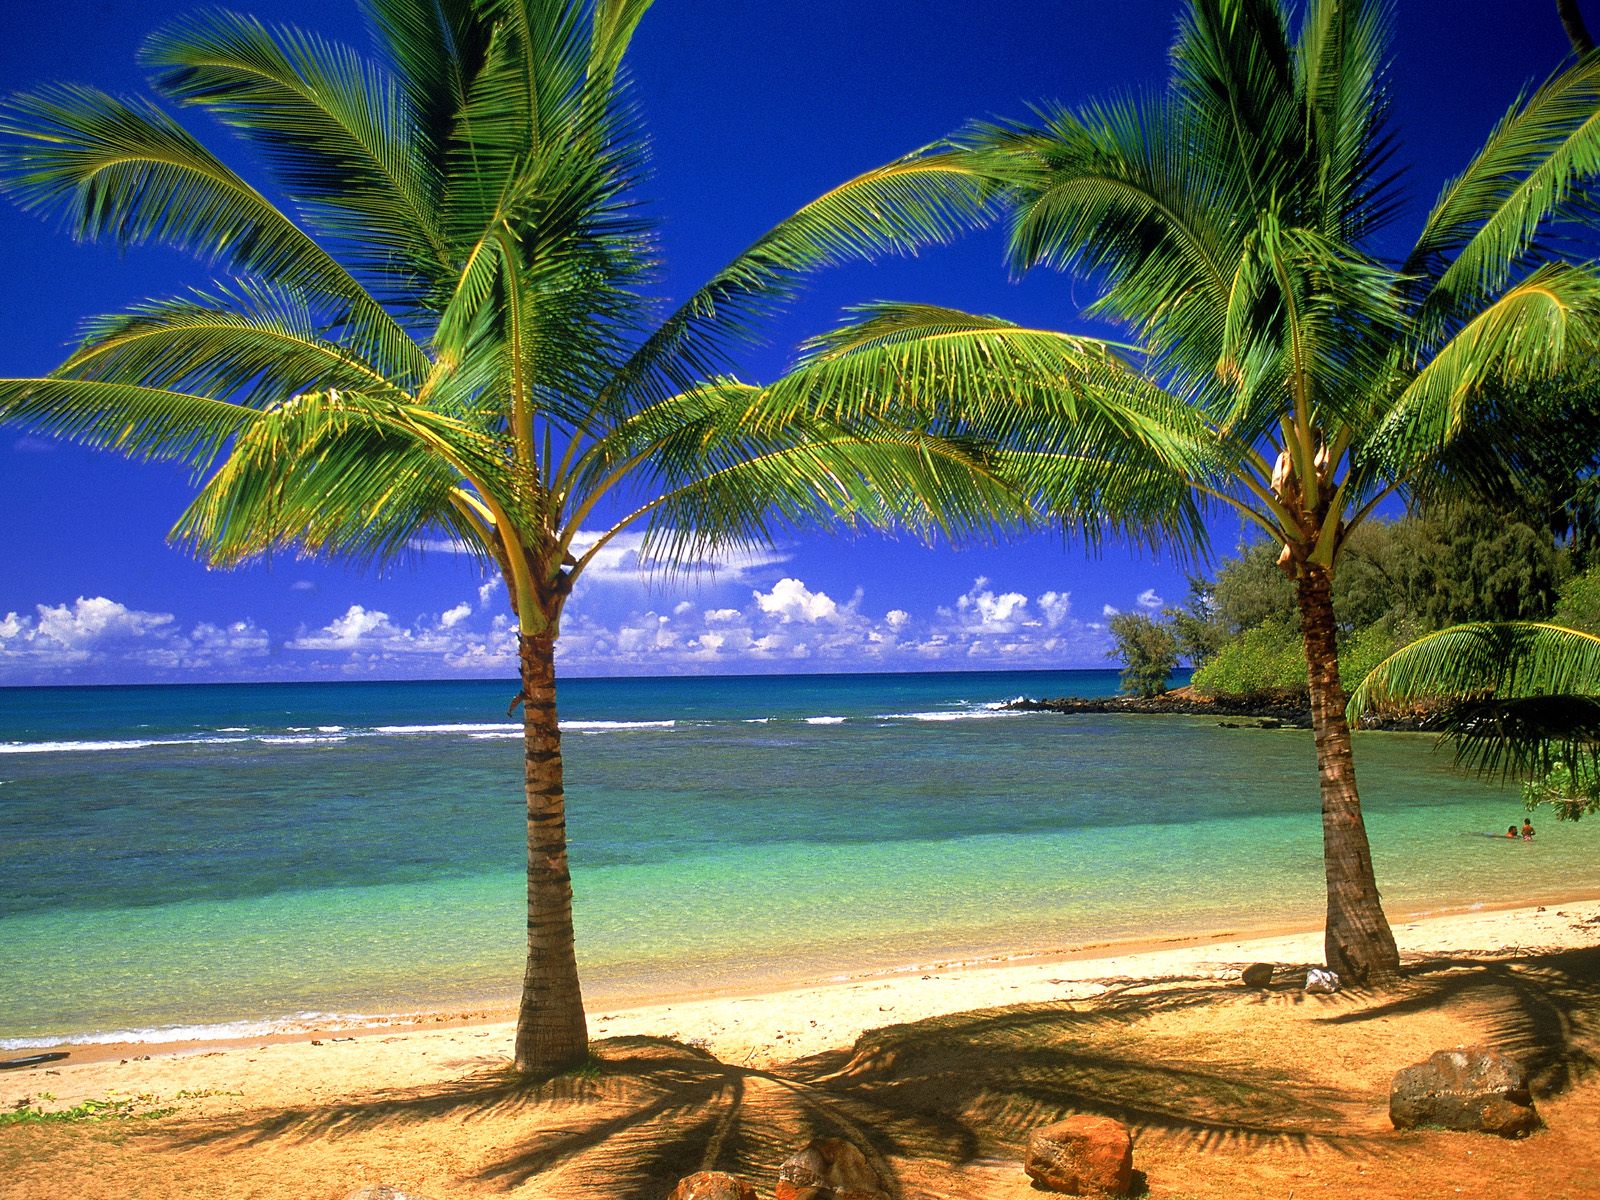 Beaches Islands HD Wallpapers Beach Desktop Backgrounds Images 1600x1200